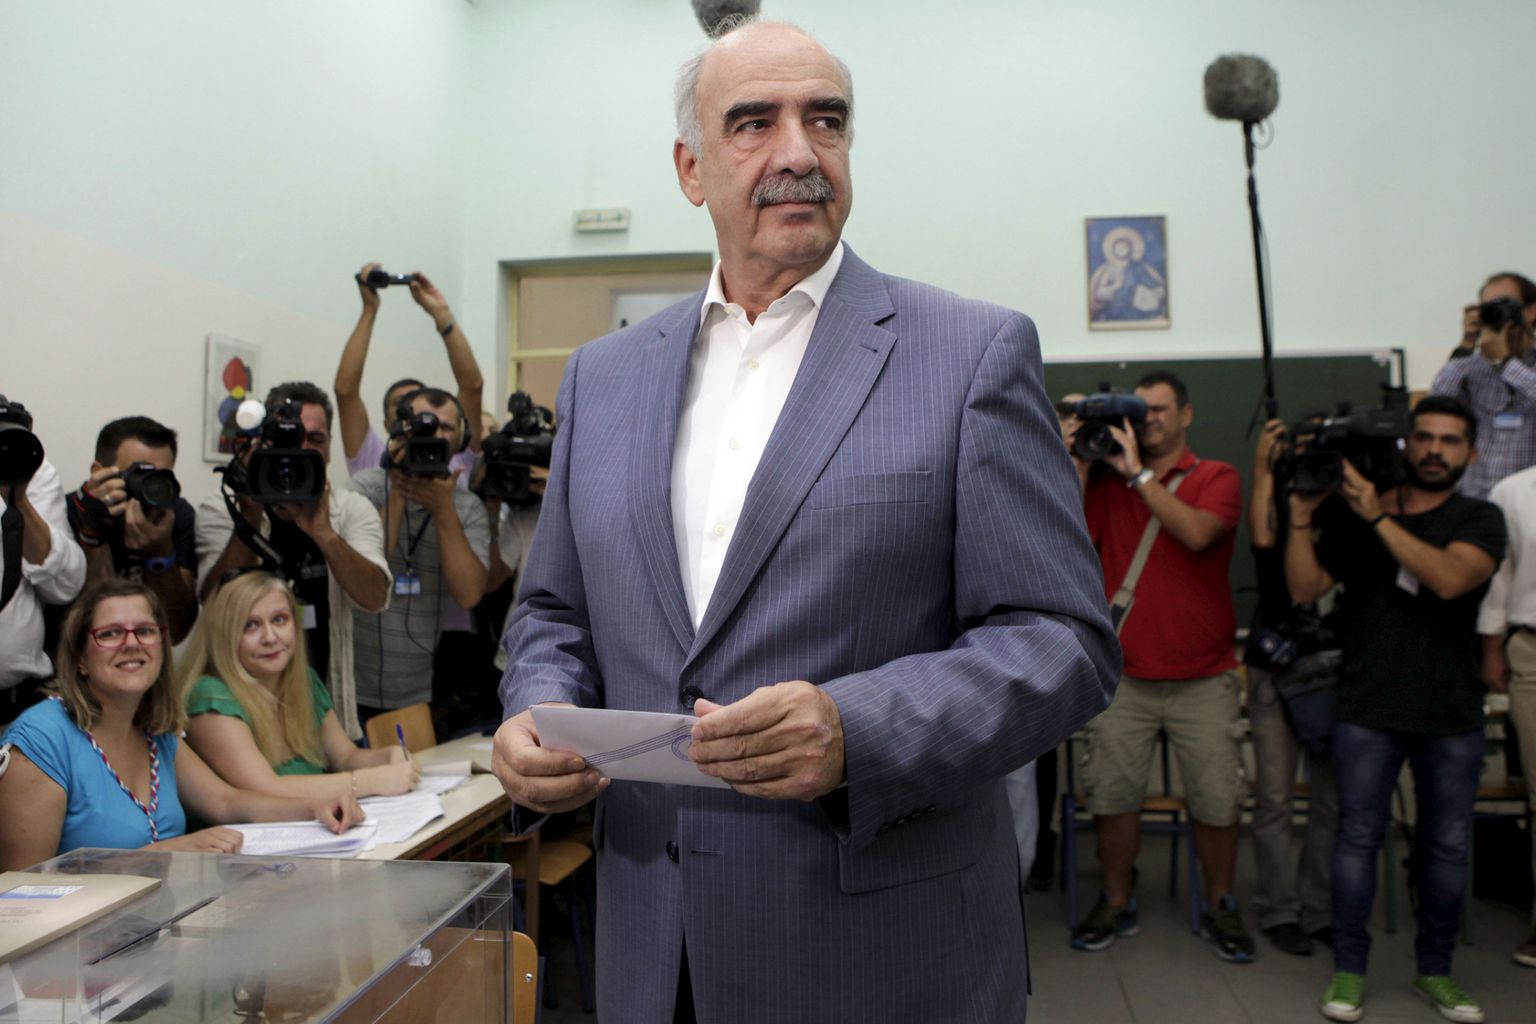 Kreeka konservatiivse erakonna Uus Demokraatia liider Vangelis Meimarakis